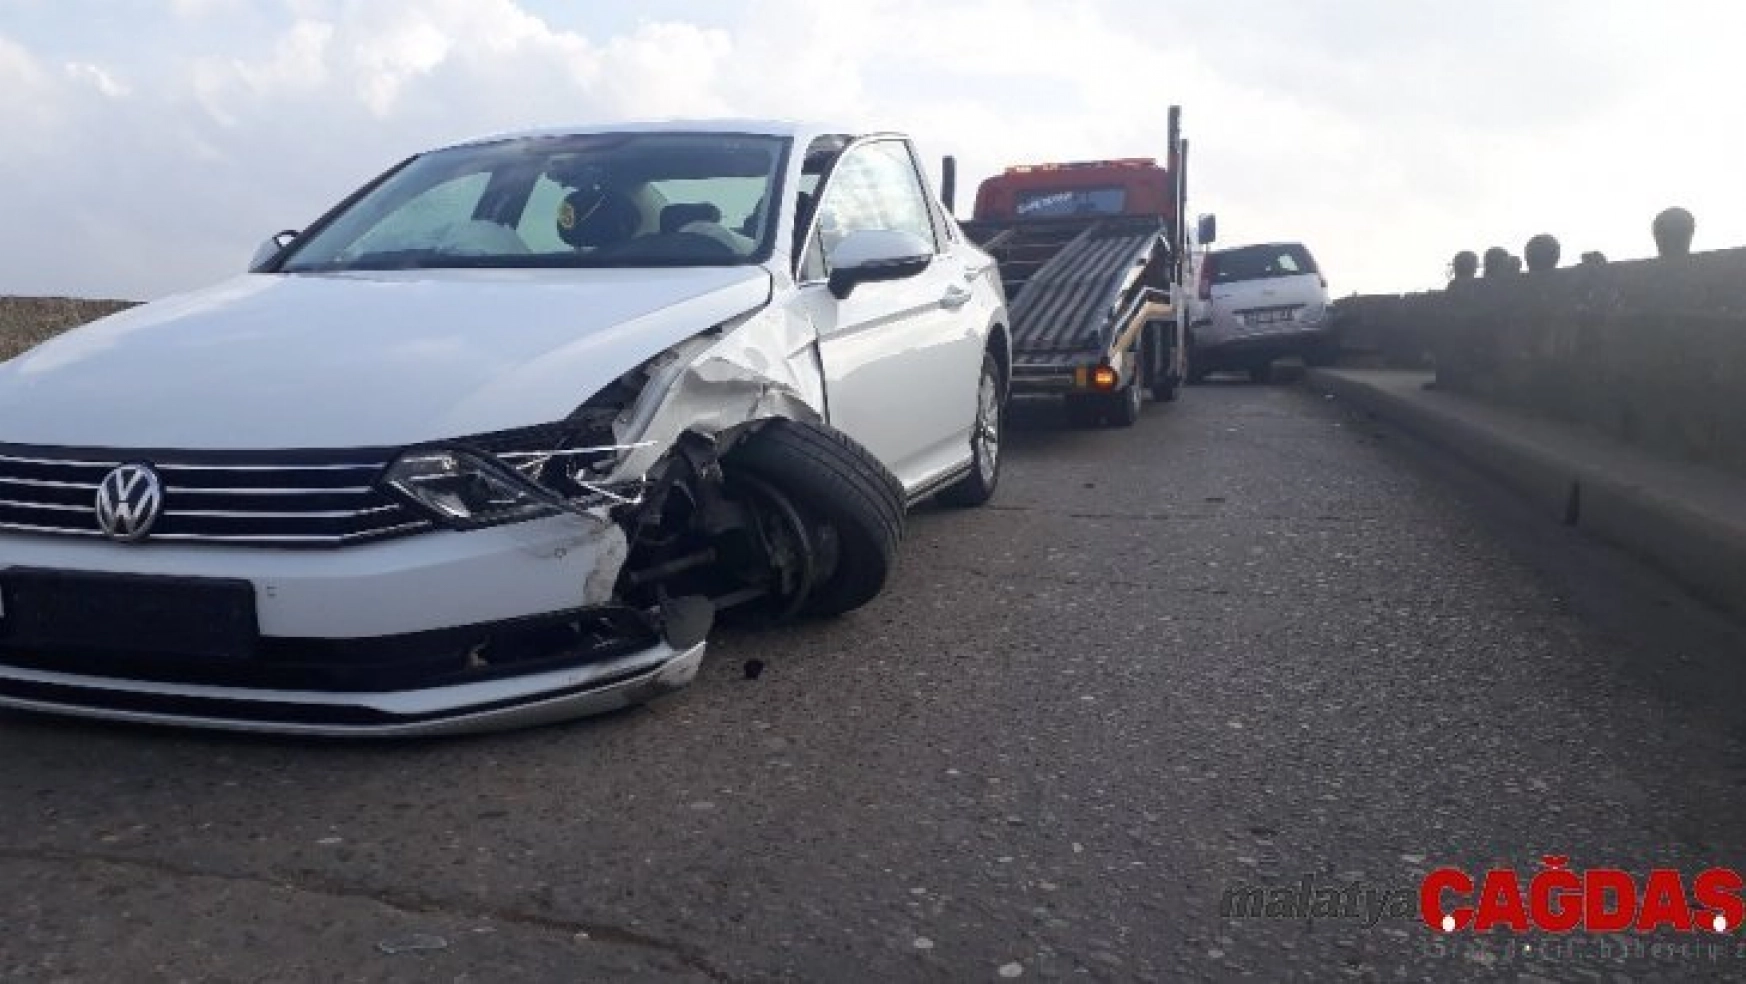 Edirne'de trafik kazası: 2 yaralı